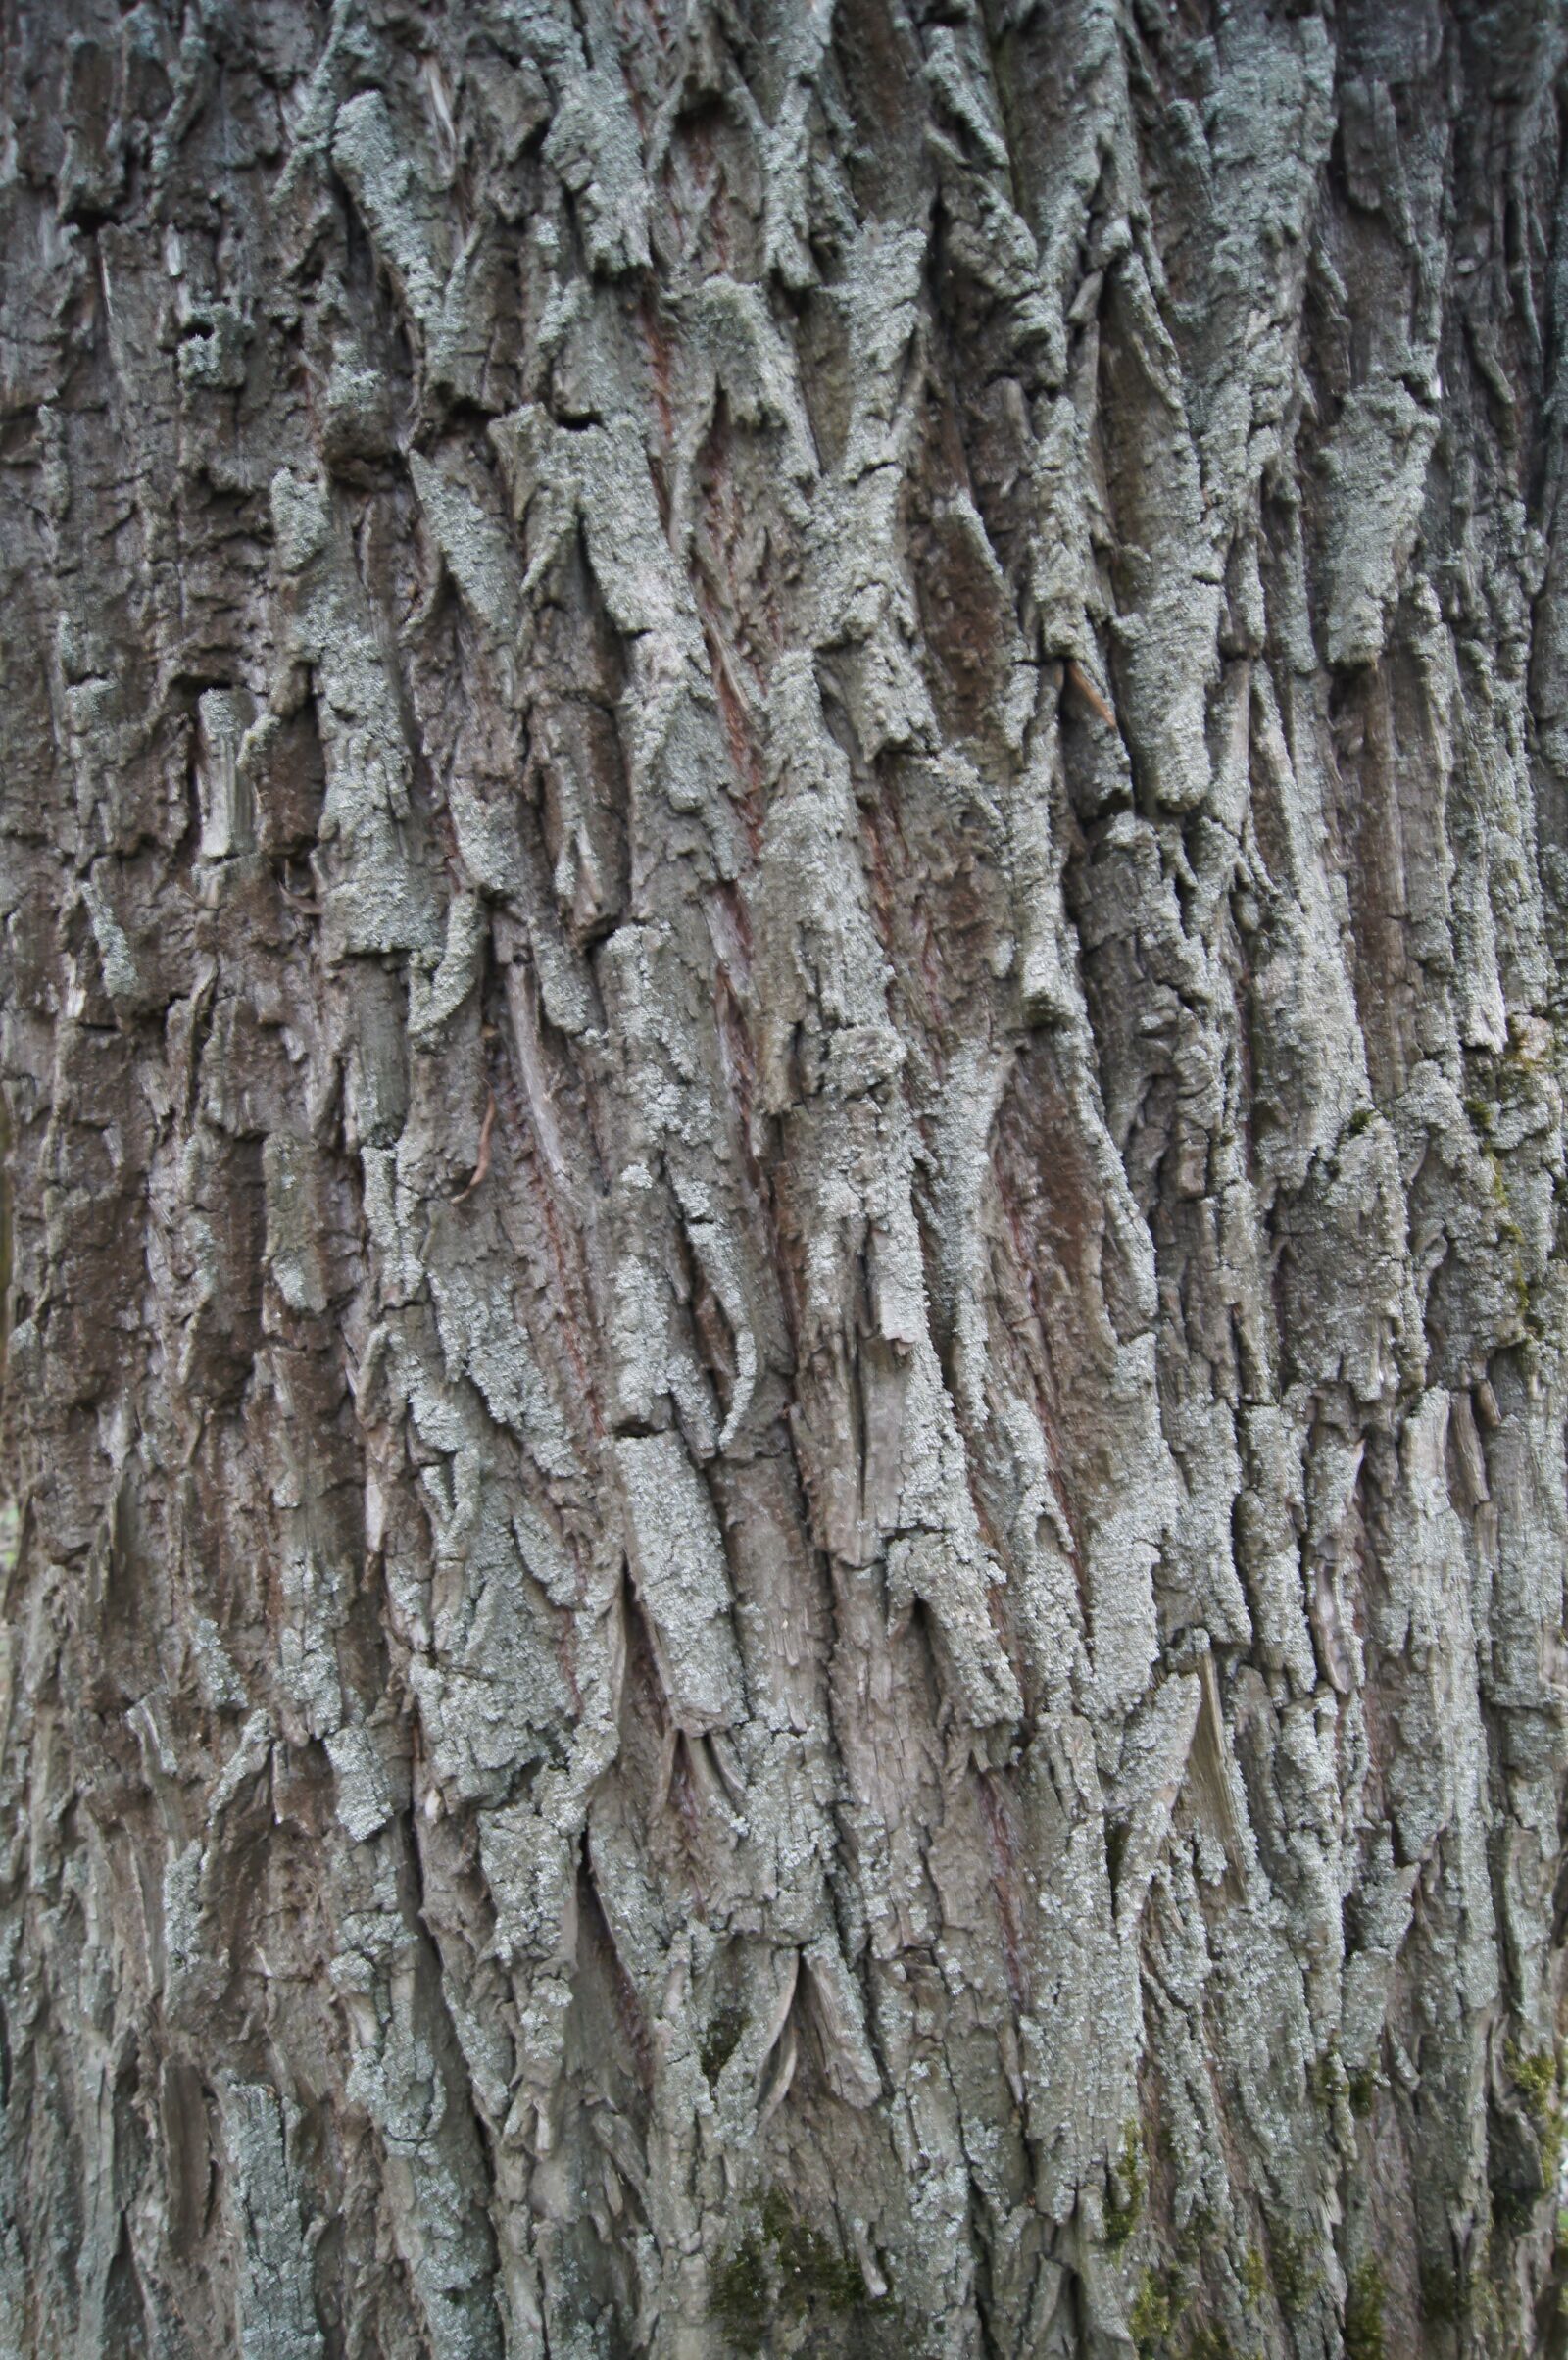 Sony Alpha DSLR-A580 sample photo. Tree bark, tree, texture photography